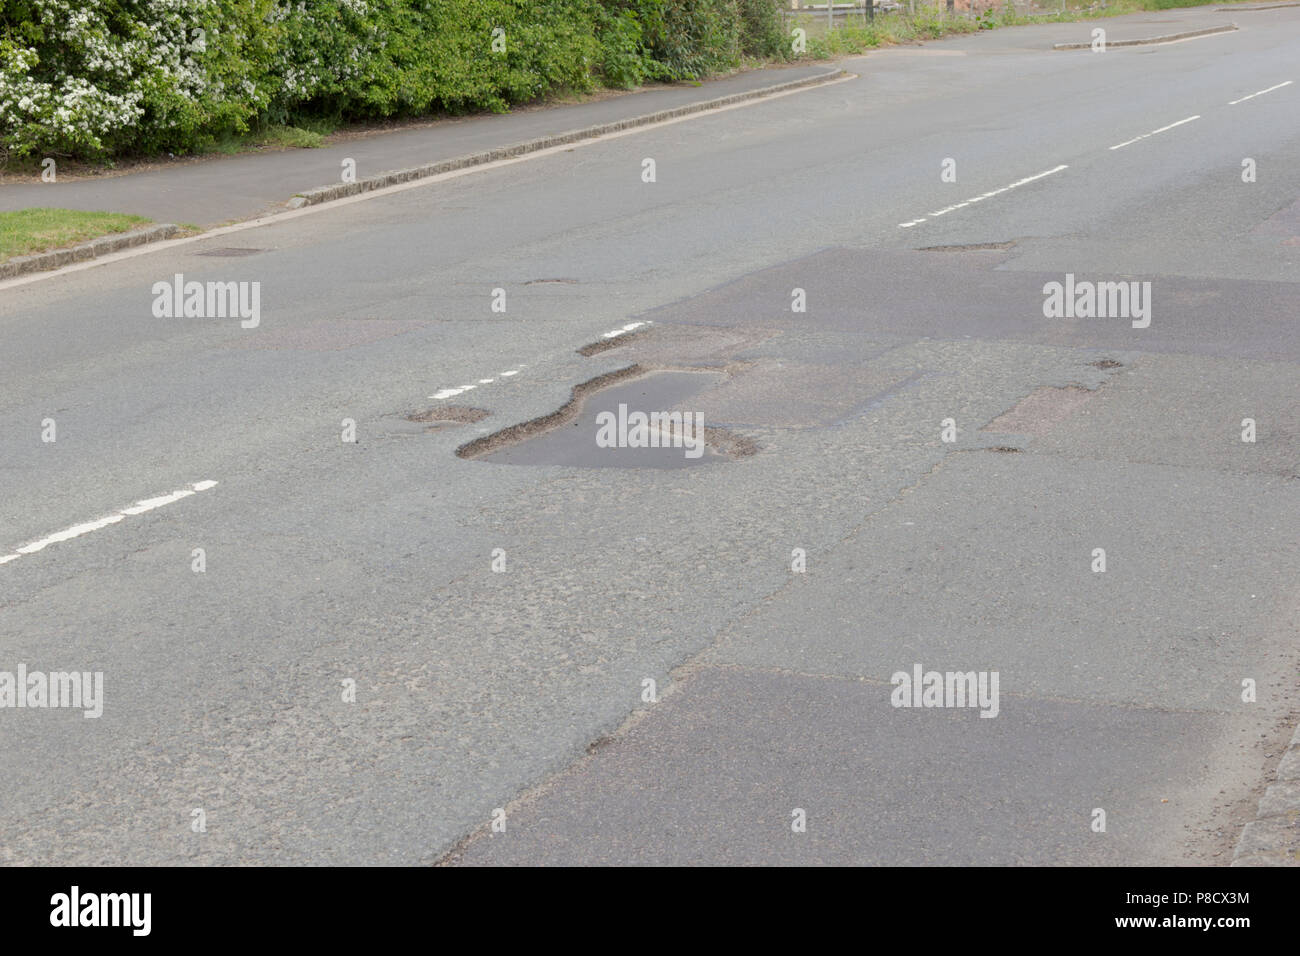 Buche Carterton, Oxfordshire UK. 13 maggio 2018. Regno Unito Meteo: buche nel West Oxfordshire, più buche sulle strade di Oxfordshire. Foto Stock